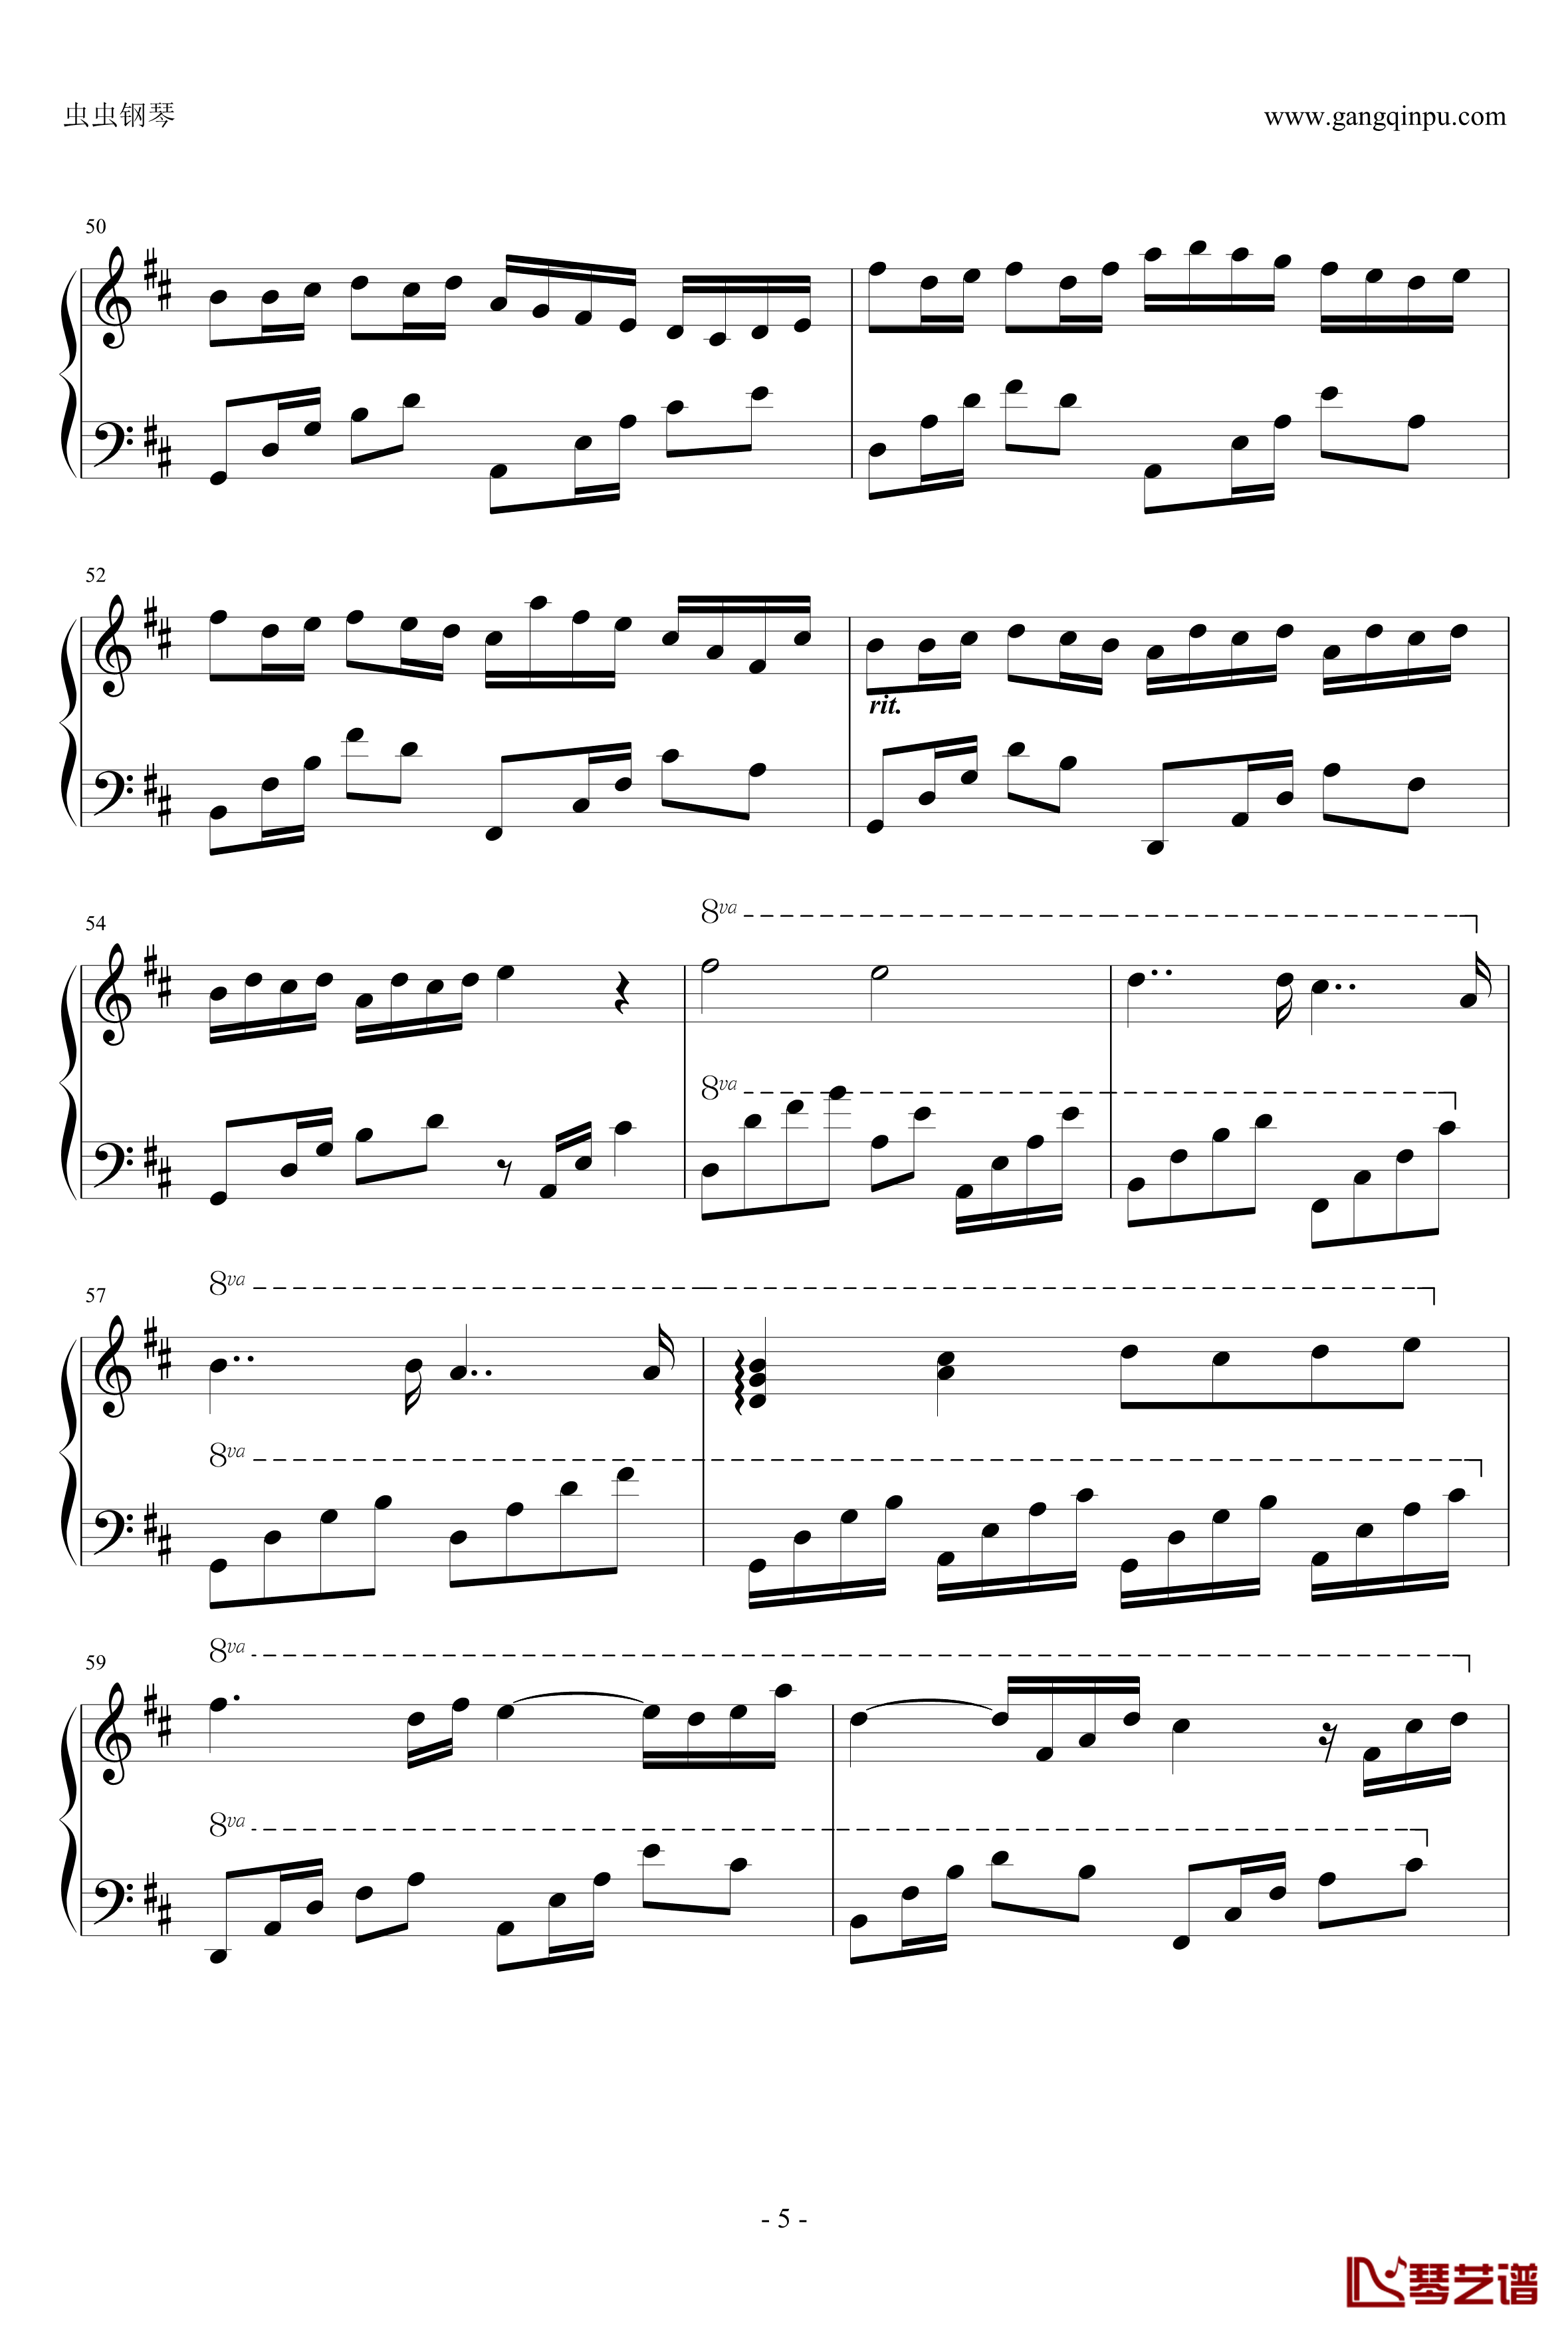 卡农钢琴谱-帕赫贝尔-Pachelbel5